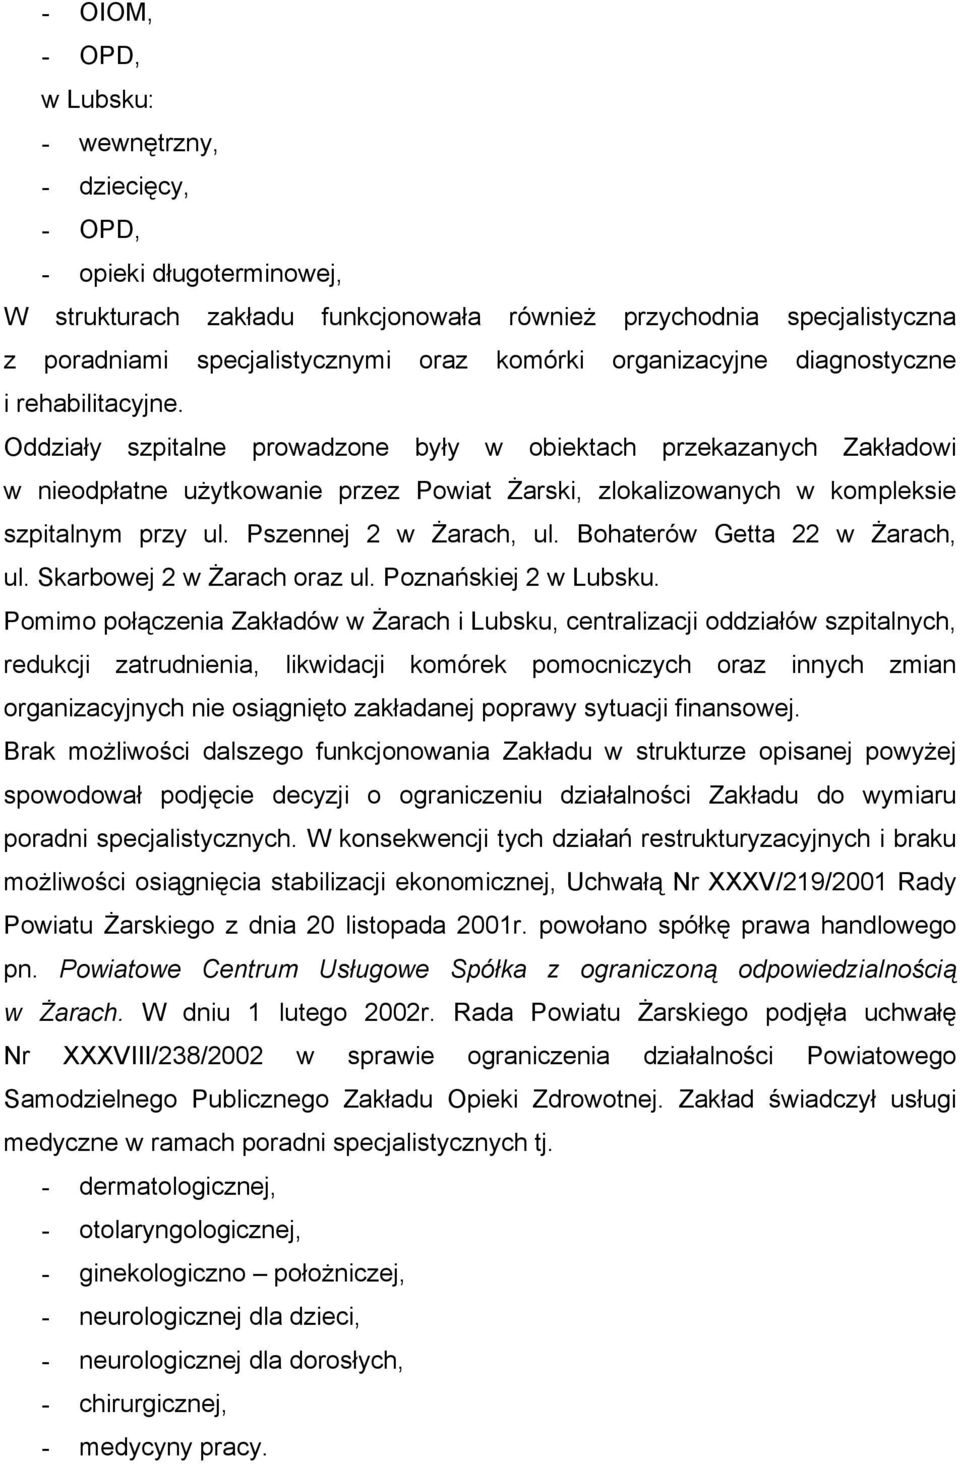 Oddziały szpitalne prowadzone były w obiektach przekazanych Zakładowi w nieodpłatne użytkowanie przez Powiat Żarski, zlokalizowanych w kompleksie szpitalnym przy ul. Pszennej 2 w Żarach, ul.